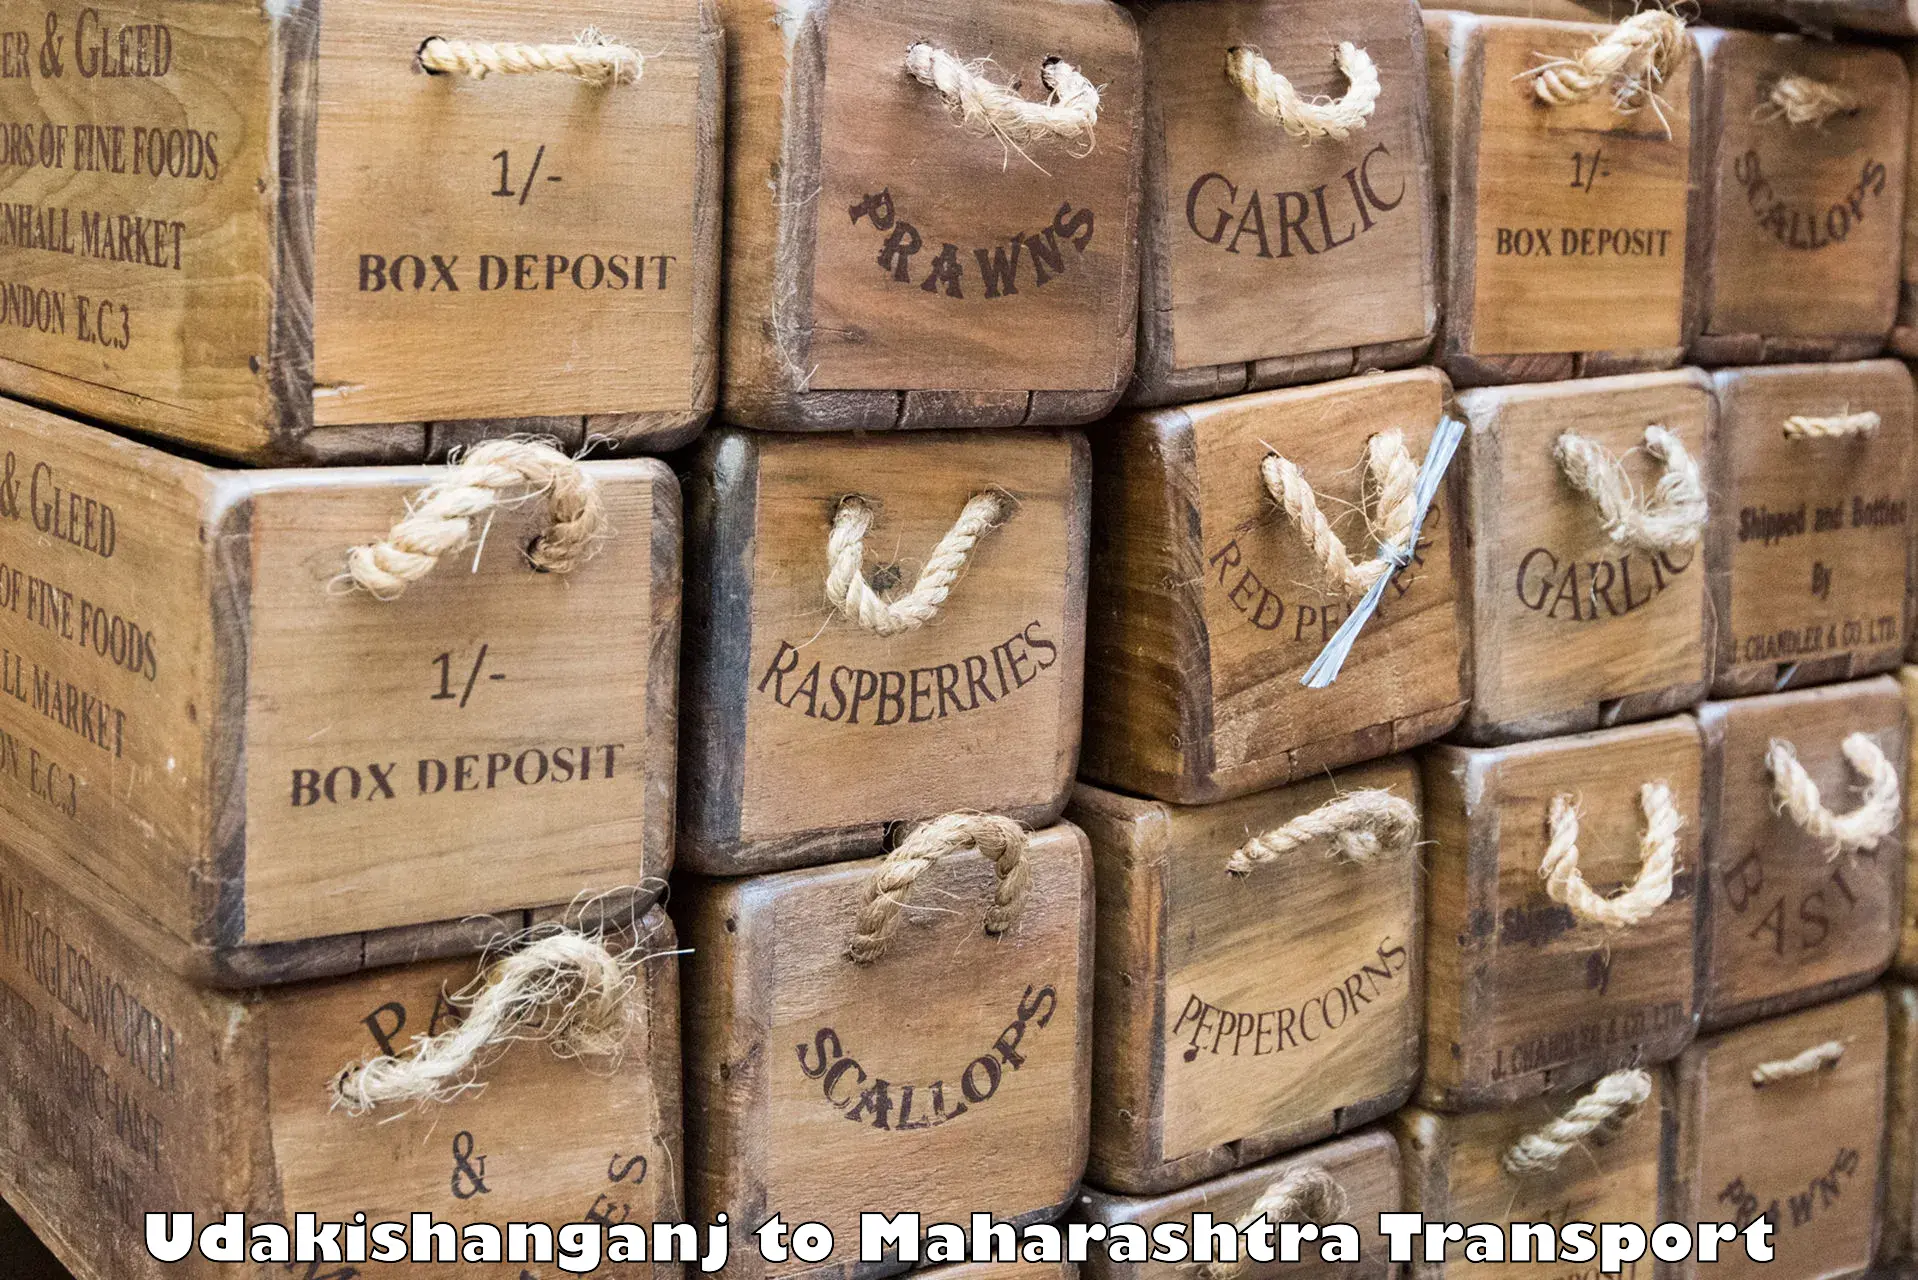 Container transport service Udakishanganj to Mahagaon